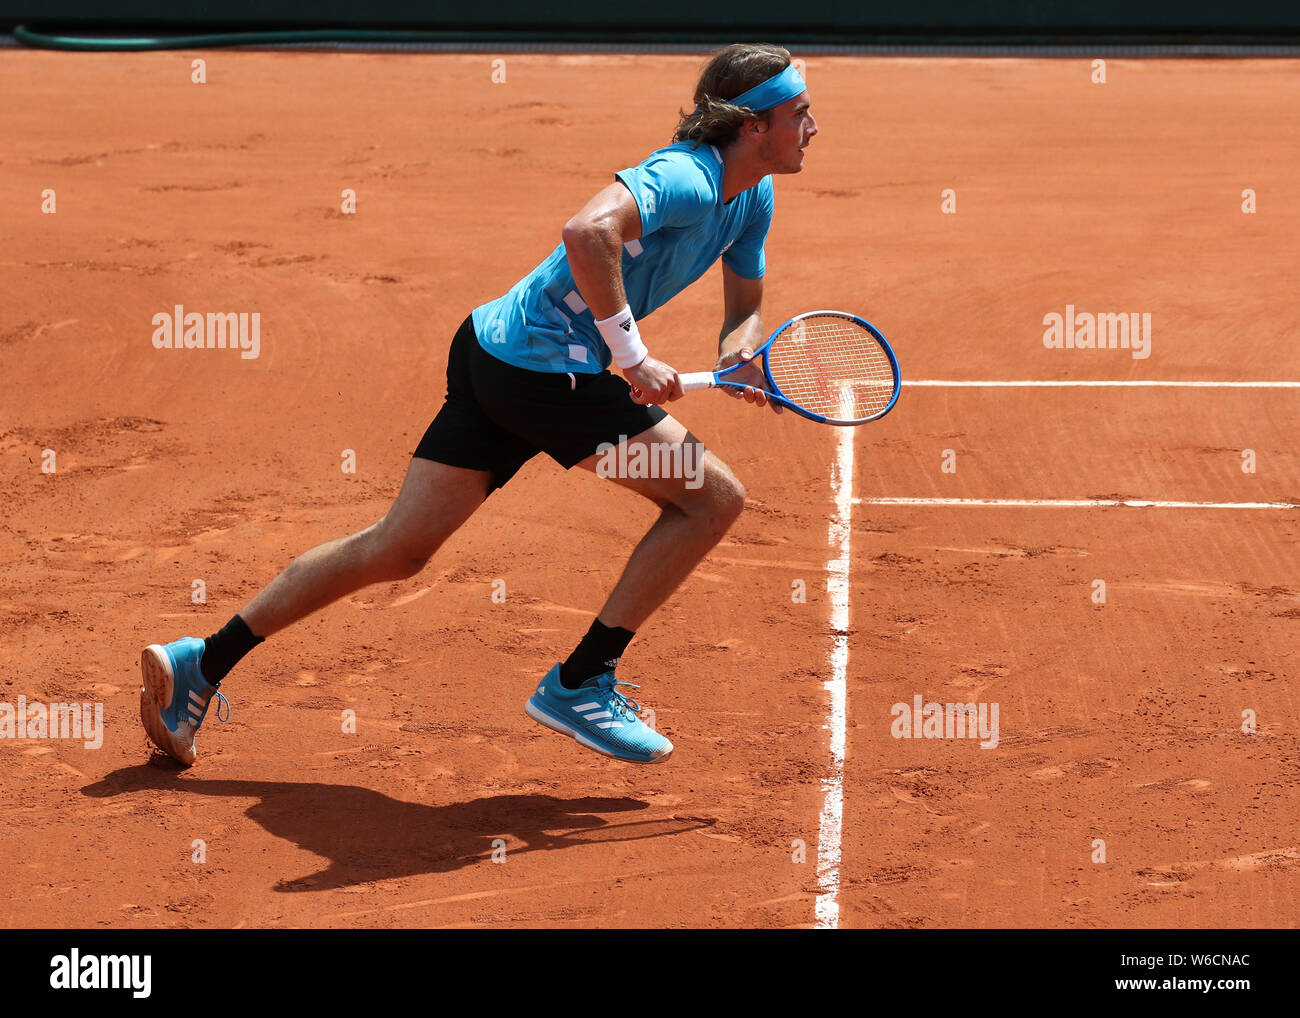 Griechische tennis player Stefanos Tsitsipas vorwärts läuft während der Französischen Turnier 2017, Paris, Frankreich Stockfoto